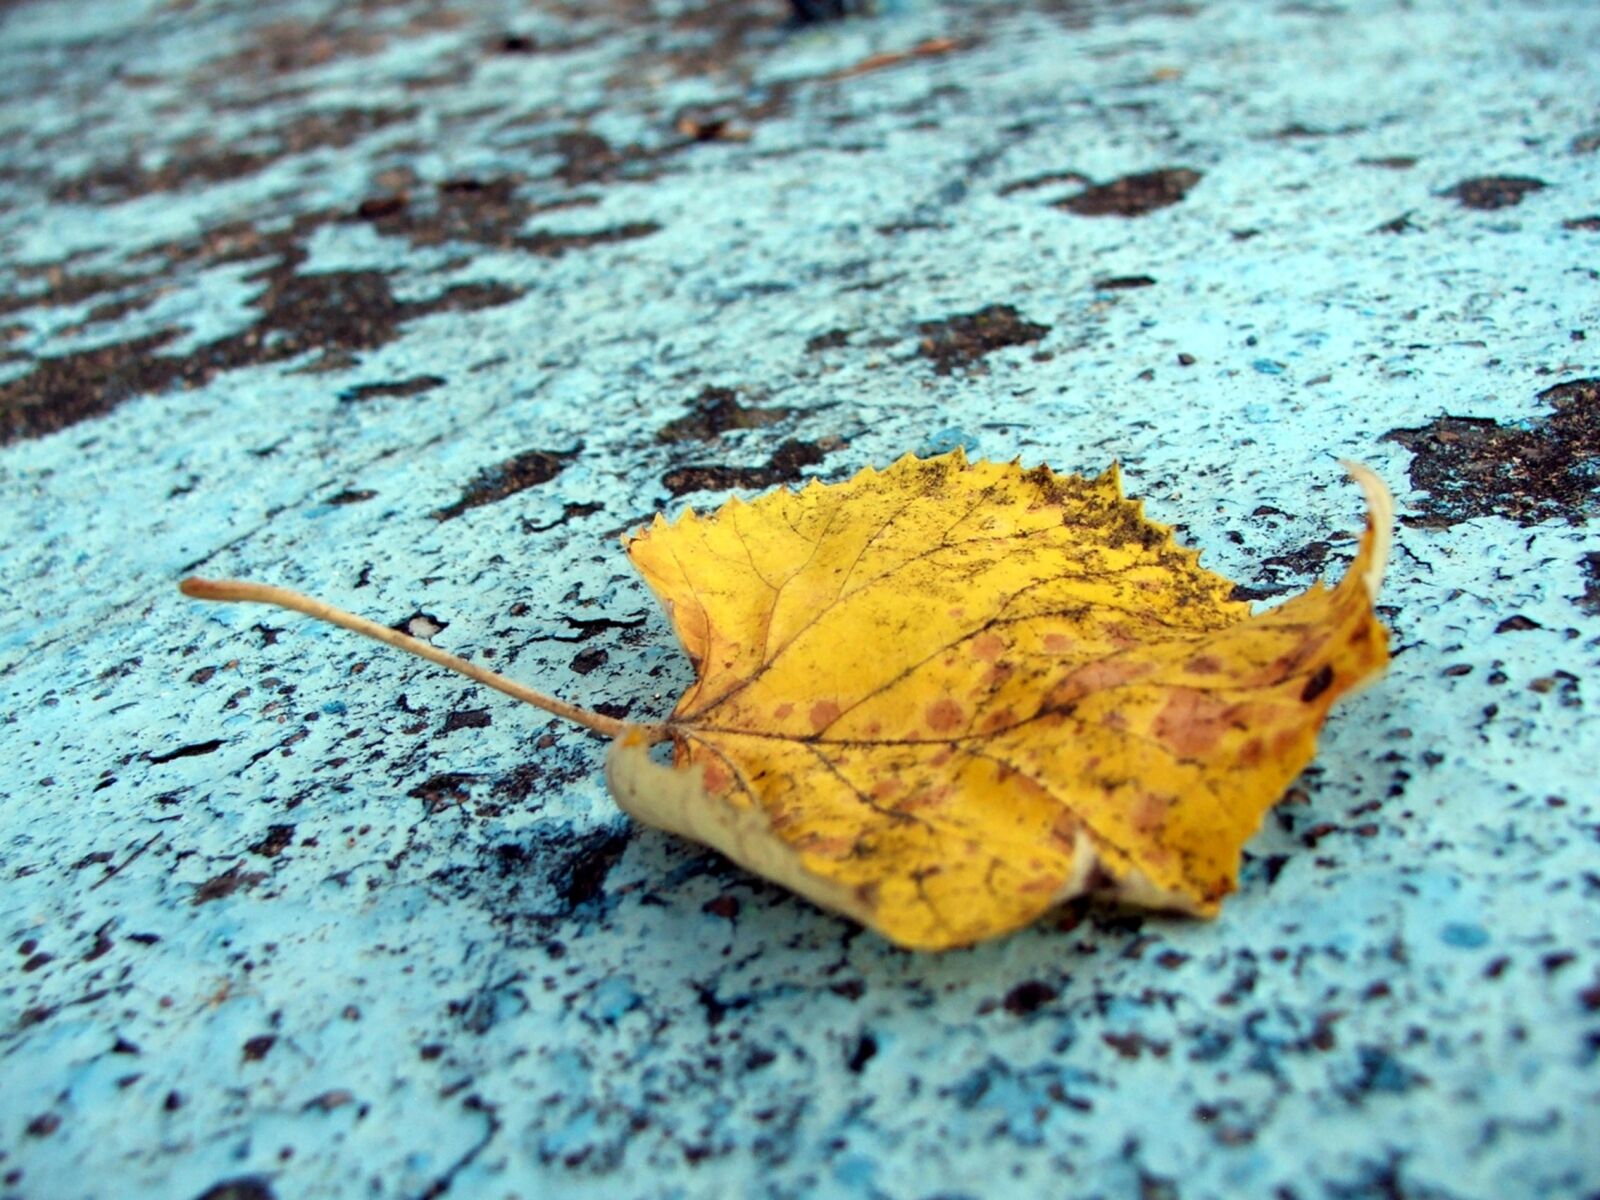 Fujifilm FinePix S5500 sample photo. Autumn colours, leaf, fall photography